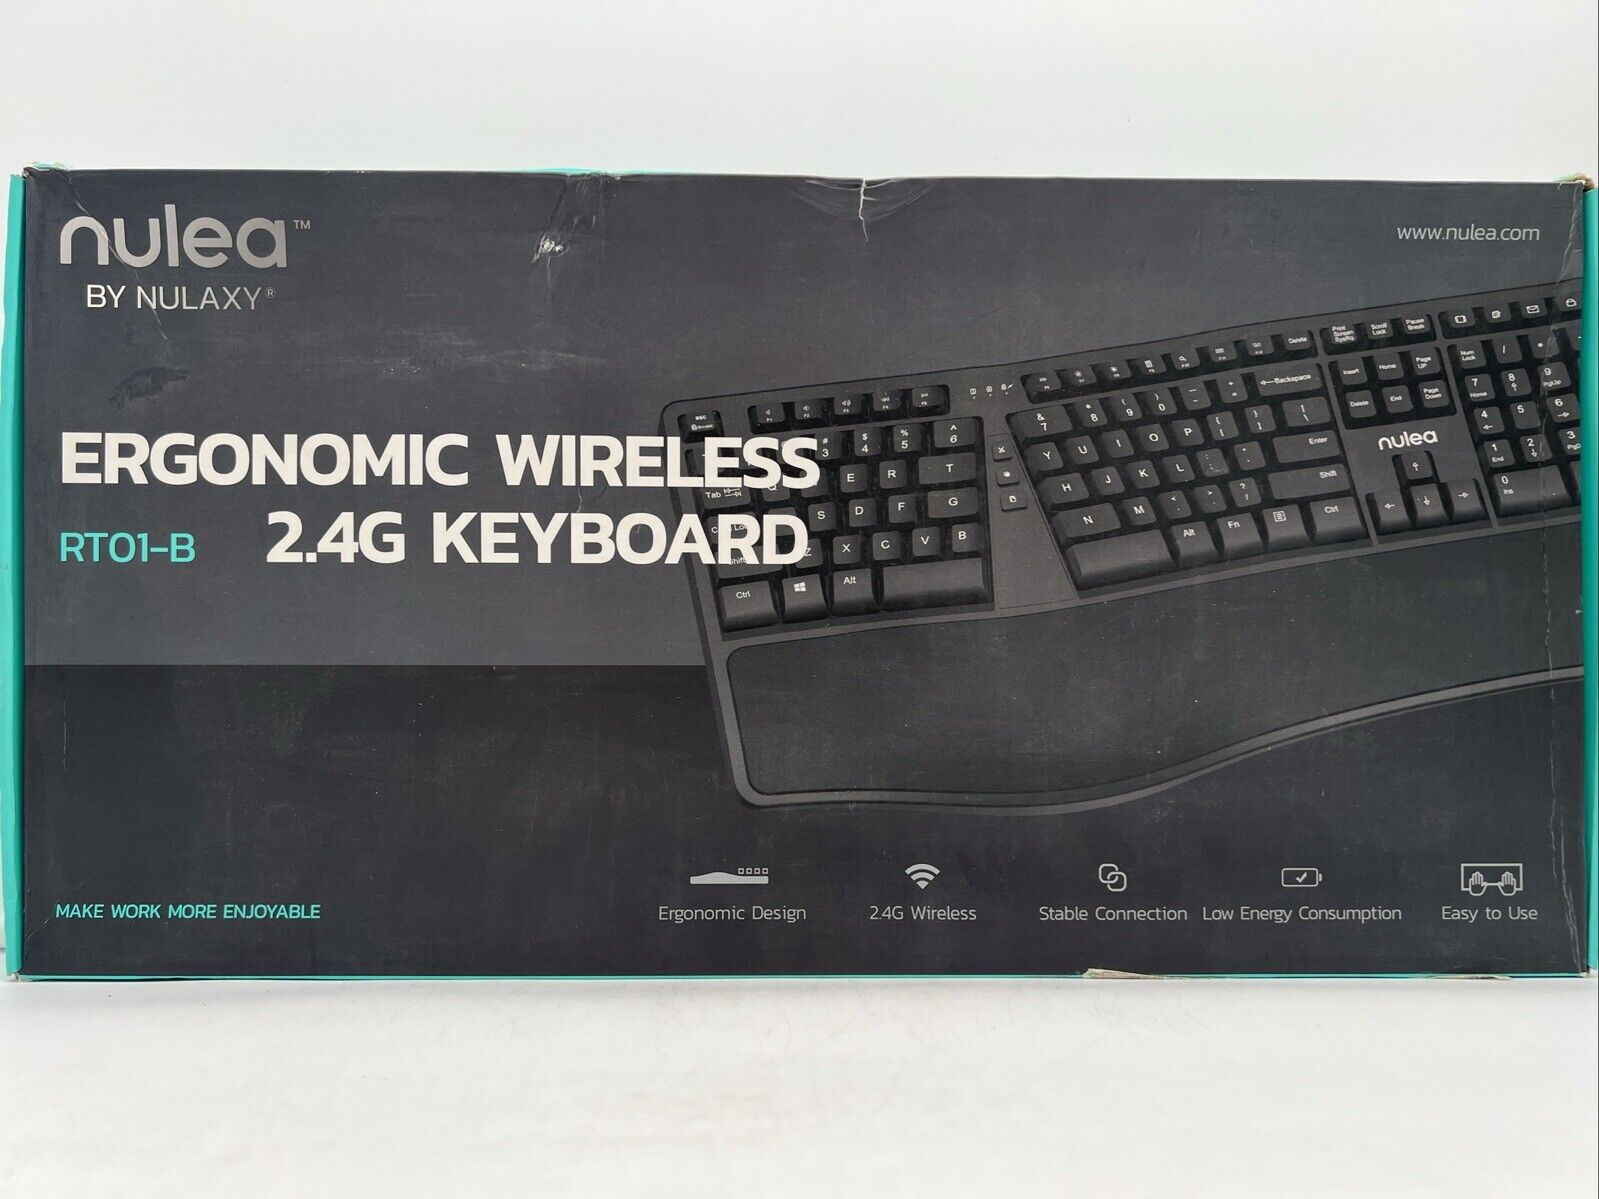 Nulea by Nulaxy Wireless Ergonomic Keyboard 2.4G Built-In Wrist Rest - RT01-B